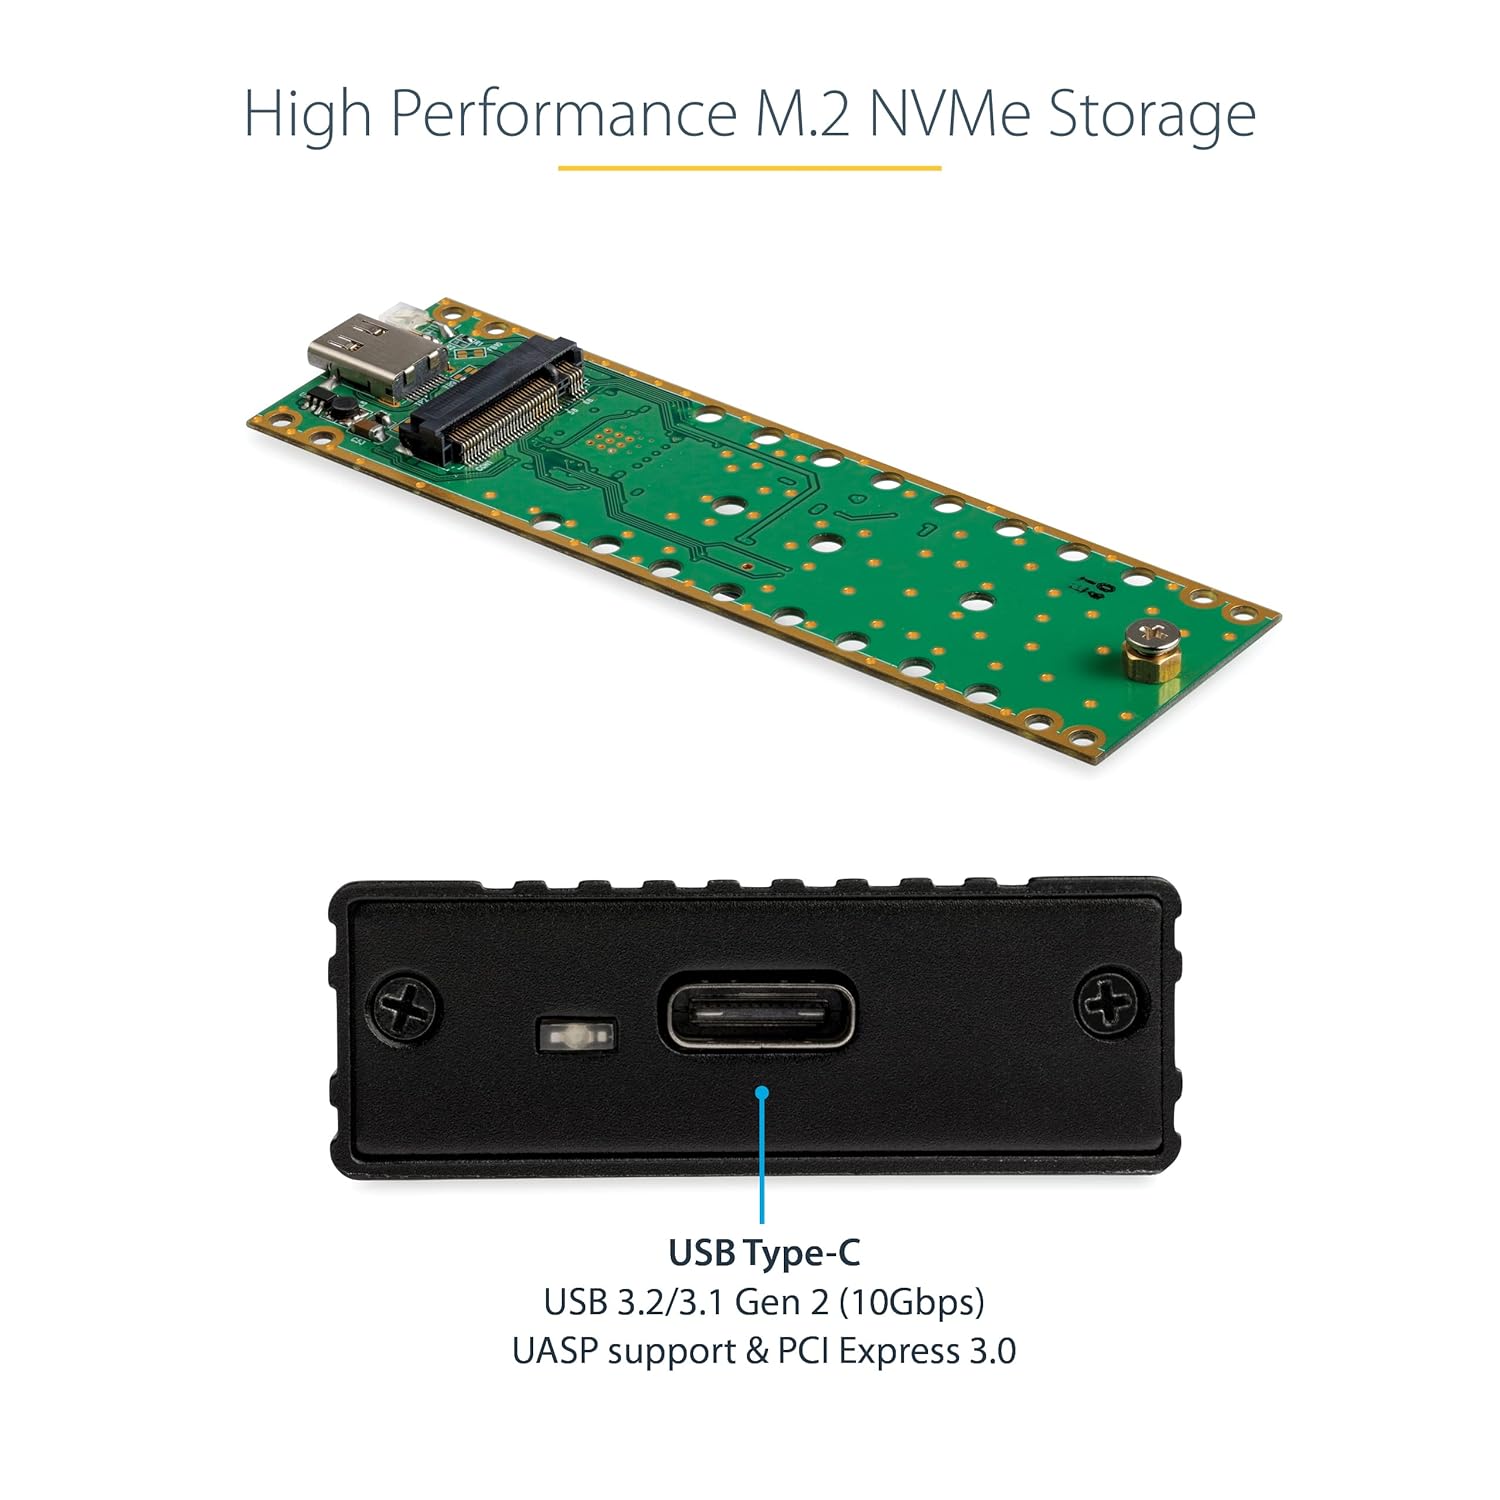 StarTech.com M.2 NVMe SSD Enclosure for PCIe SSDs - USB 3.1 Gen 2 Type-C - External NVMe Enclosure - Thunderbolt 3 Compatible (M2E1BMU31C)